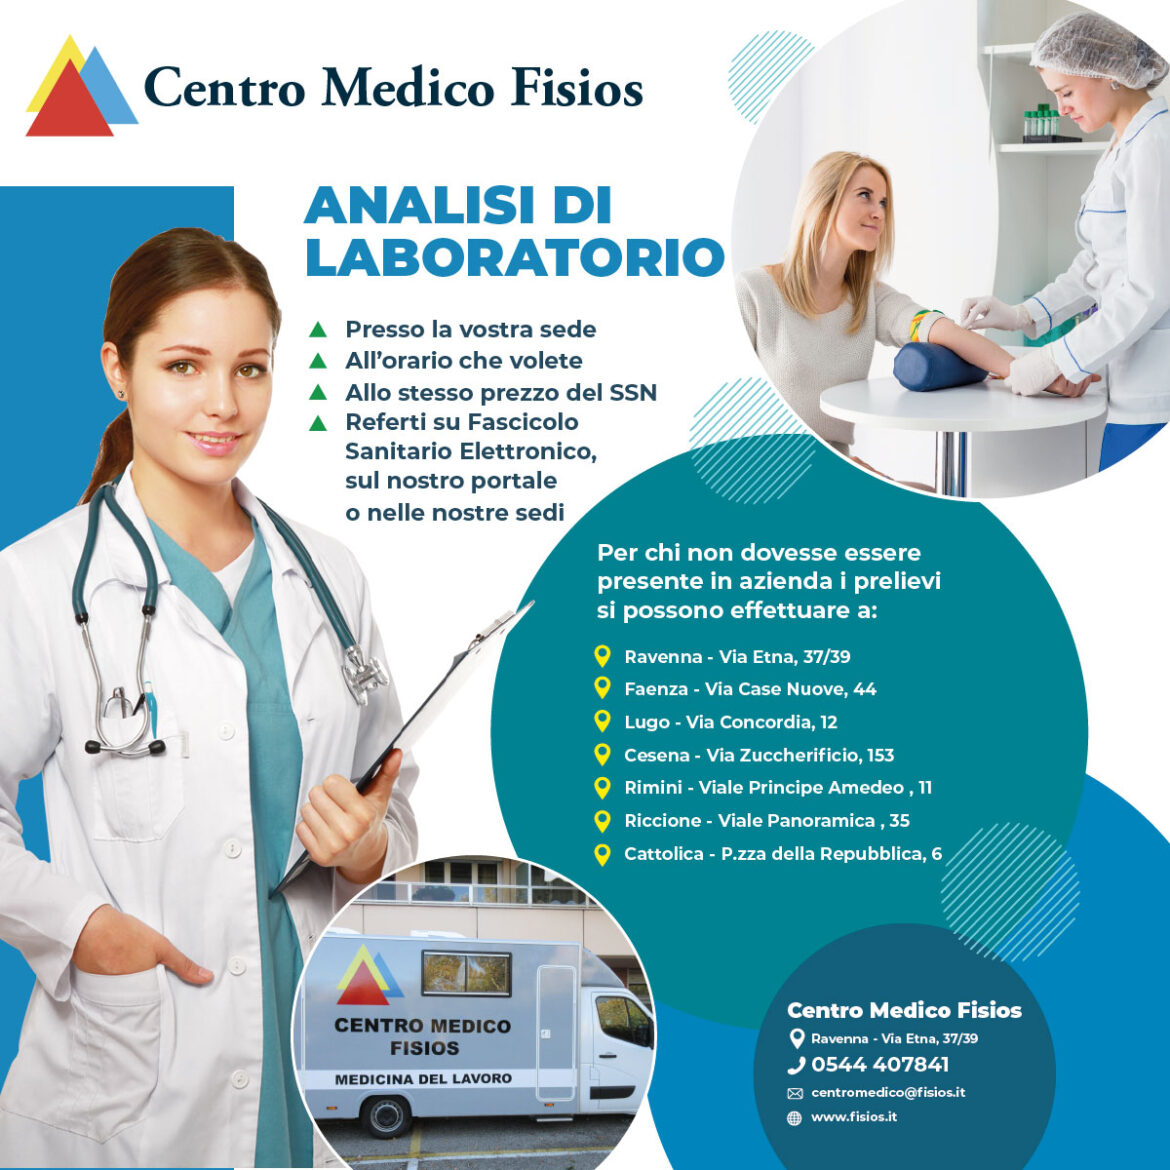 Analisi di laboratorio - Centro Medico Fisios